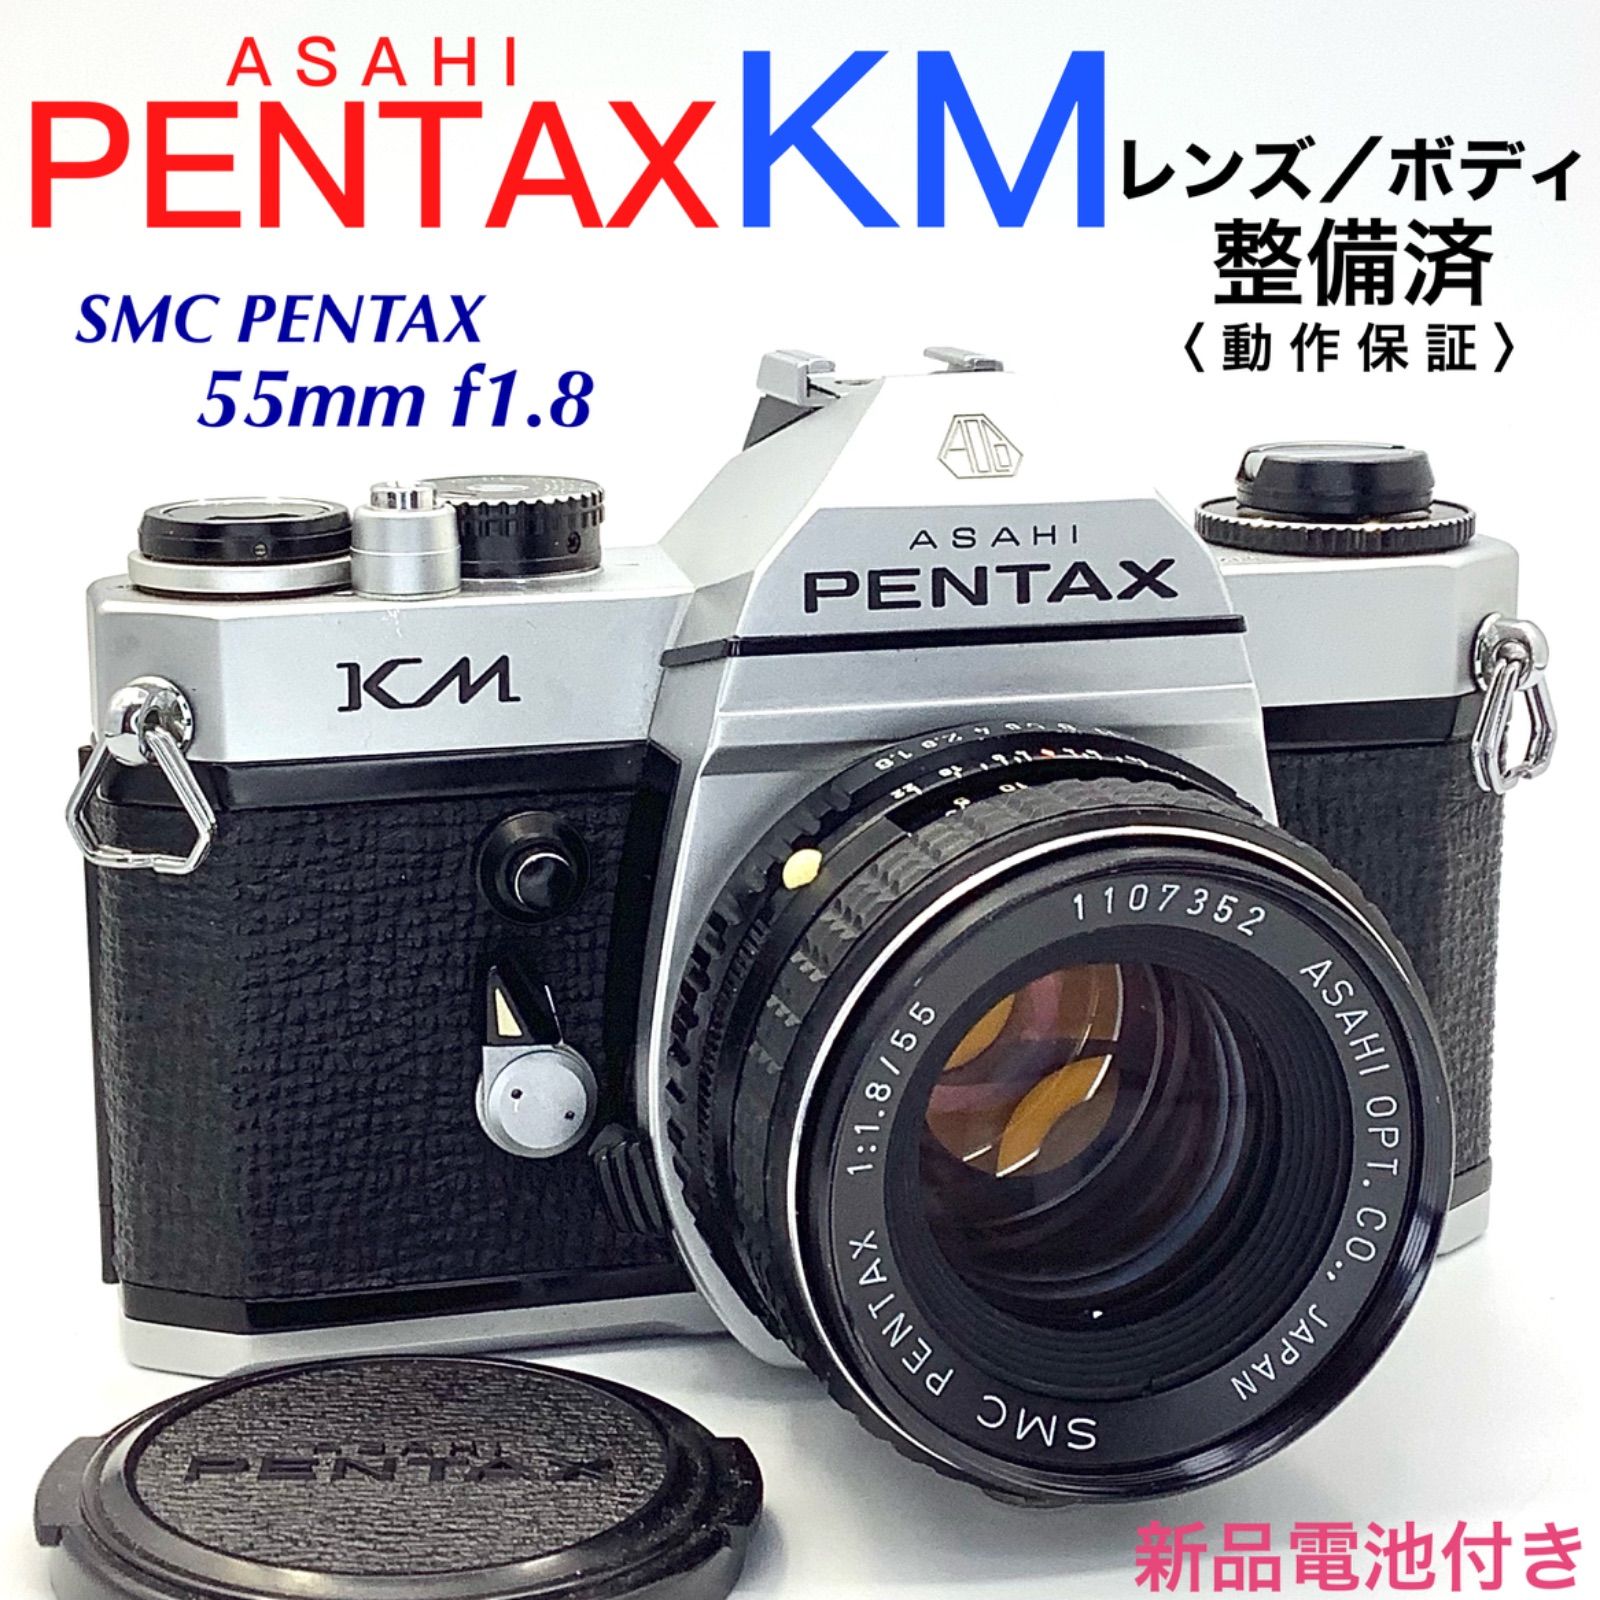 6ヶ月間は無料で修理いたしますPentax KM / SMC pentax 55mm F1.8 